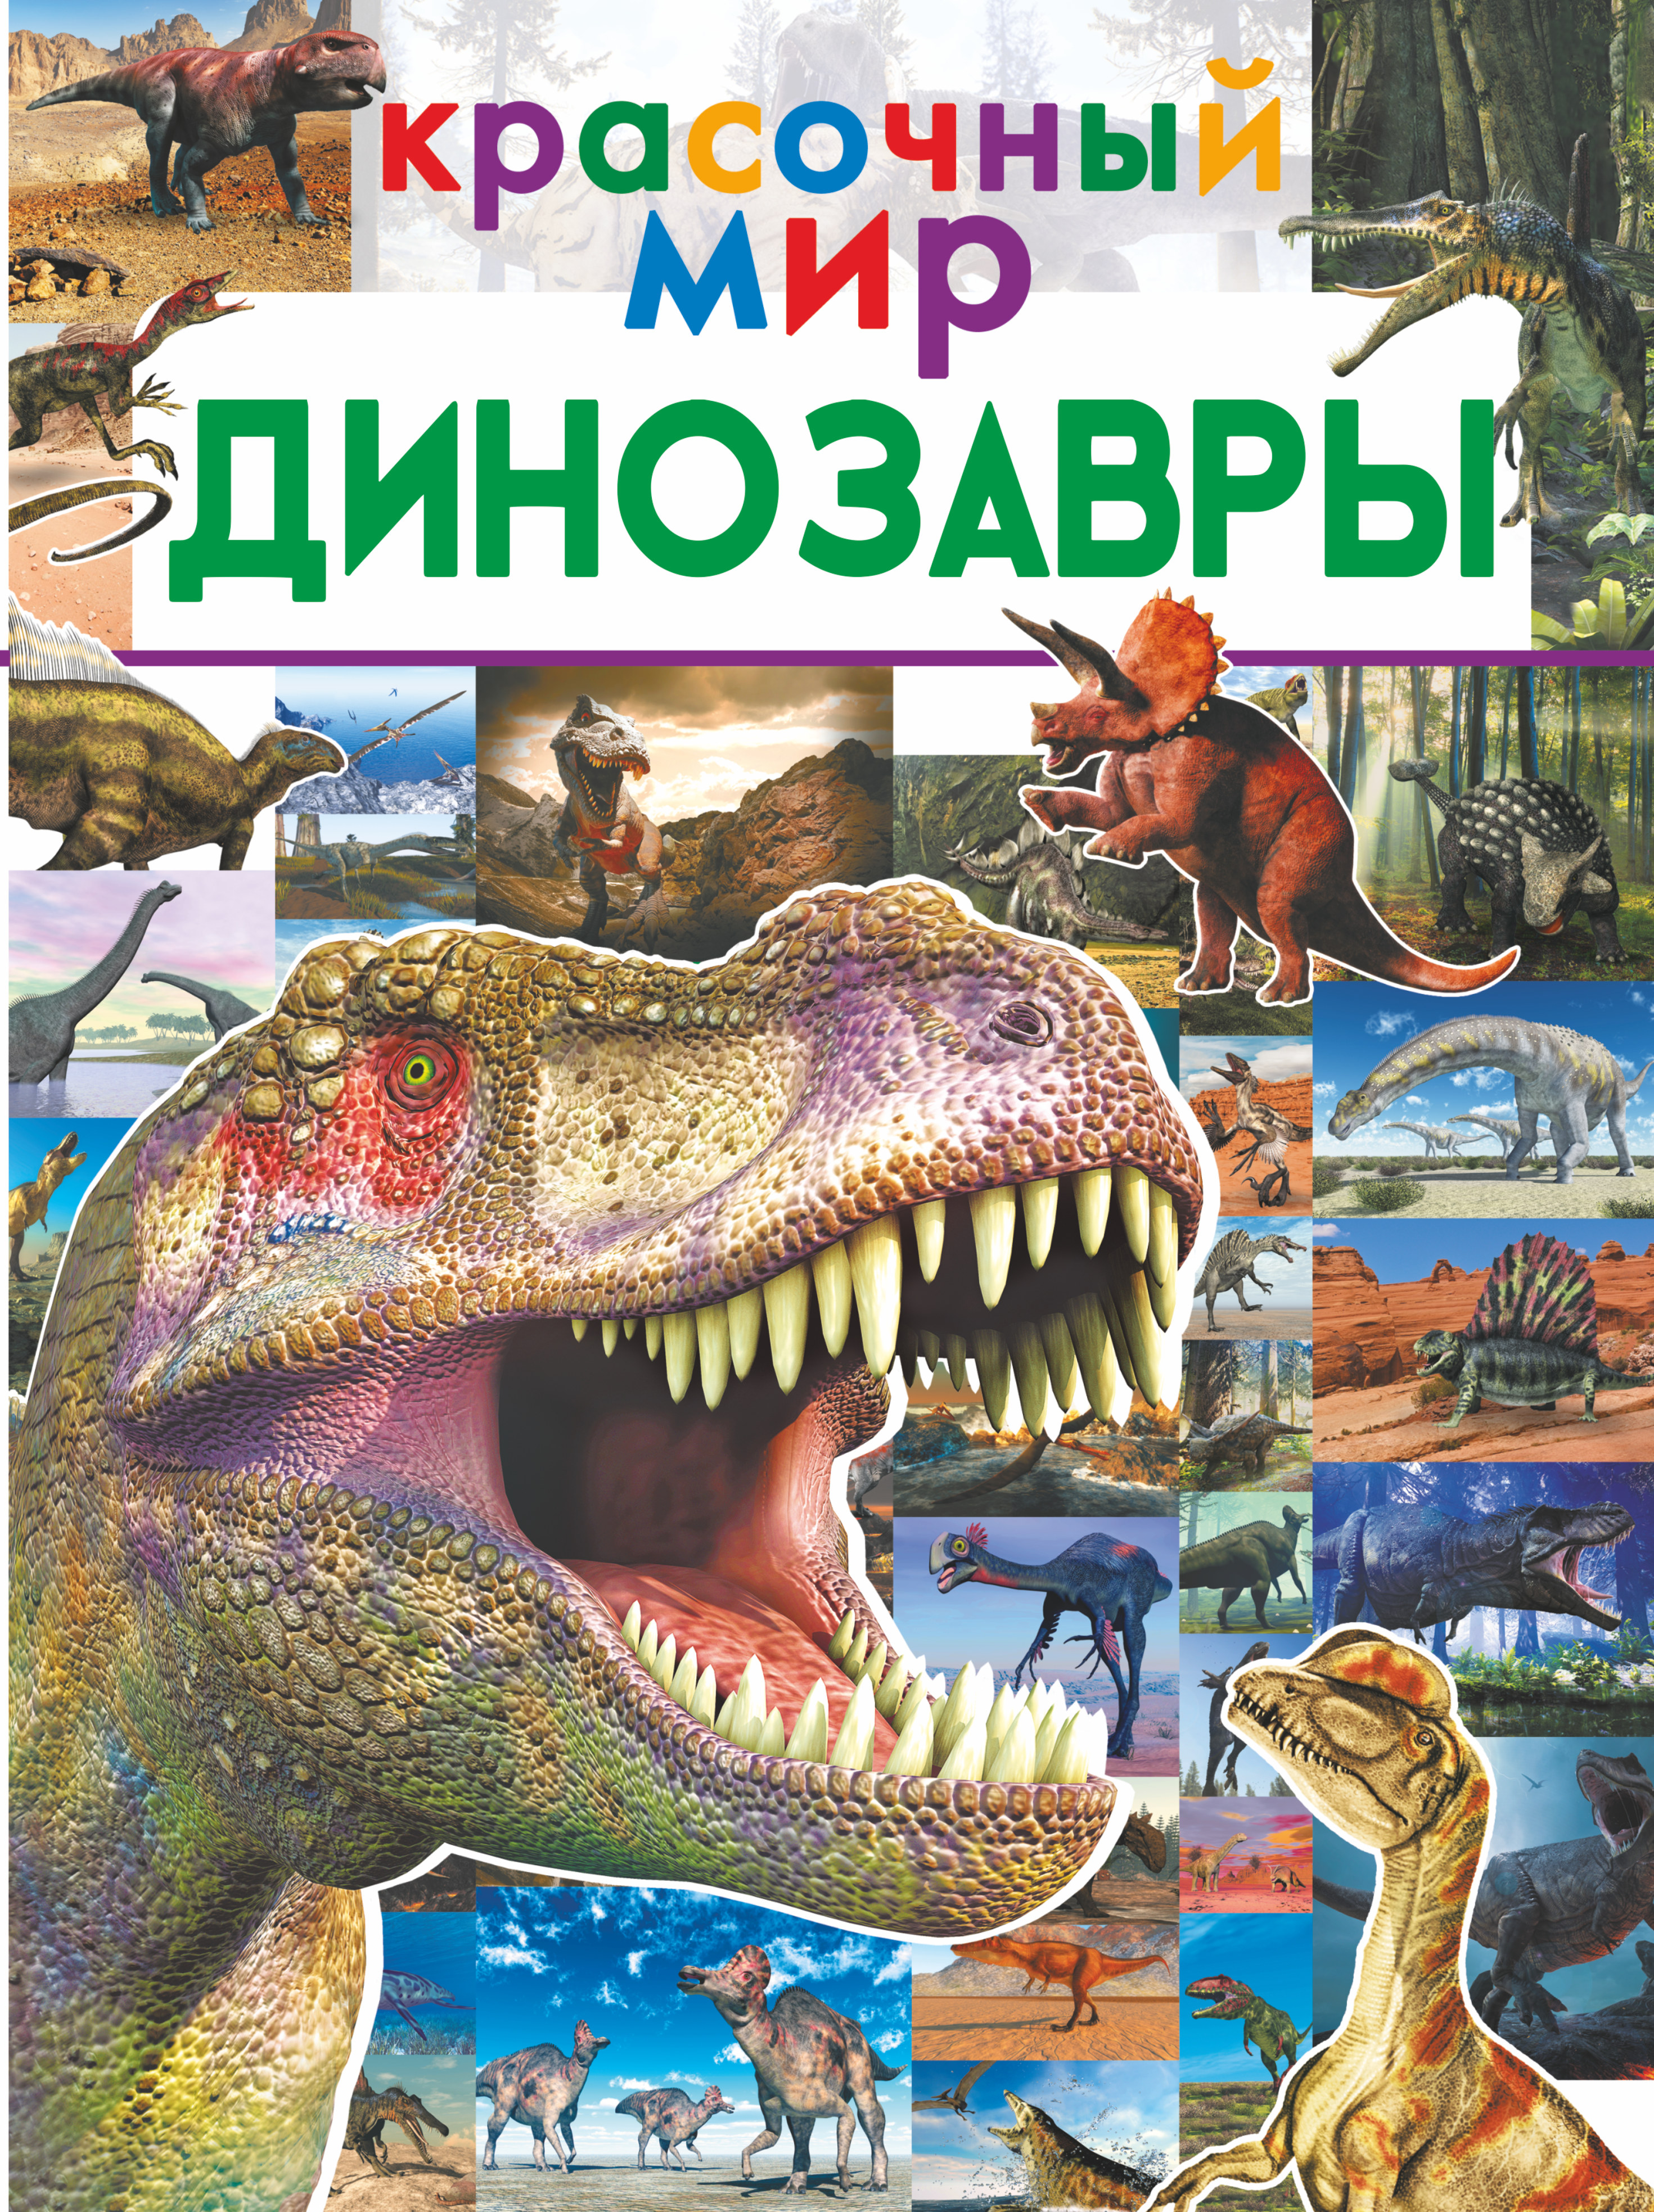 Барановская Ирина Геннадьевна Динозавры барановская ирина геннадьевна невероятные динозавры